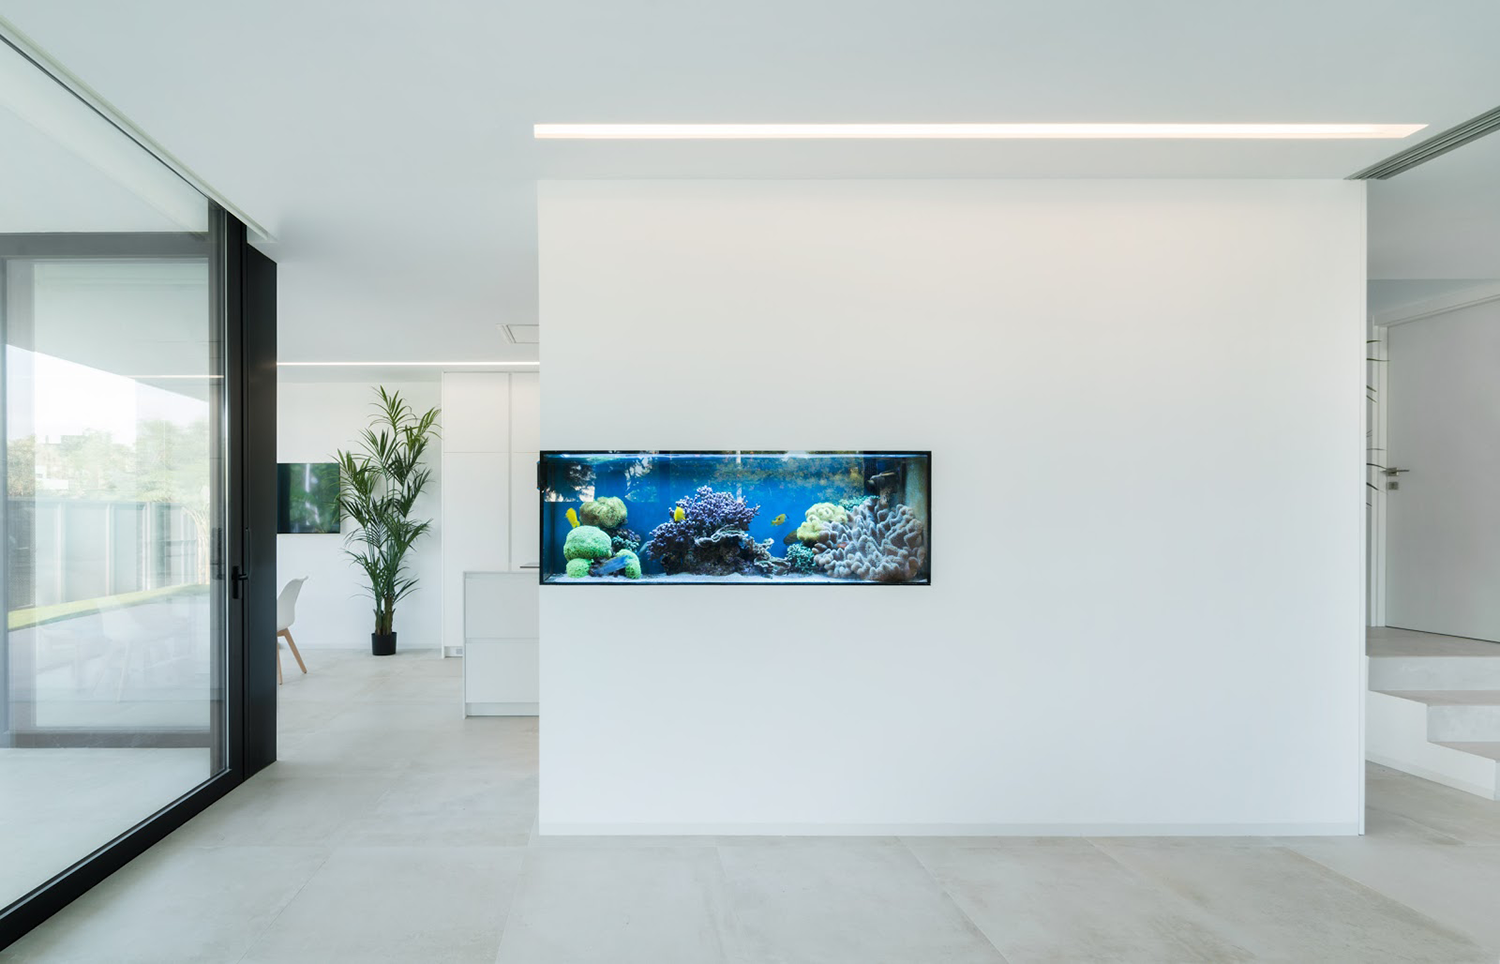 How to Incorporate Aquariums into Interior Design